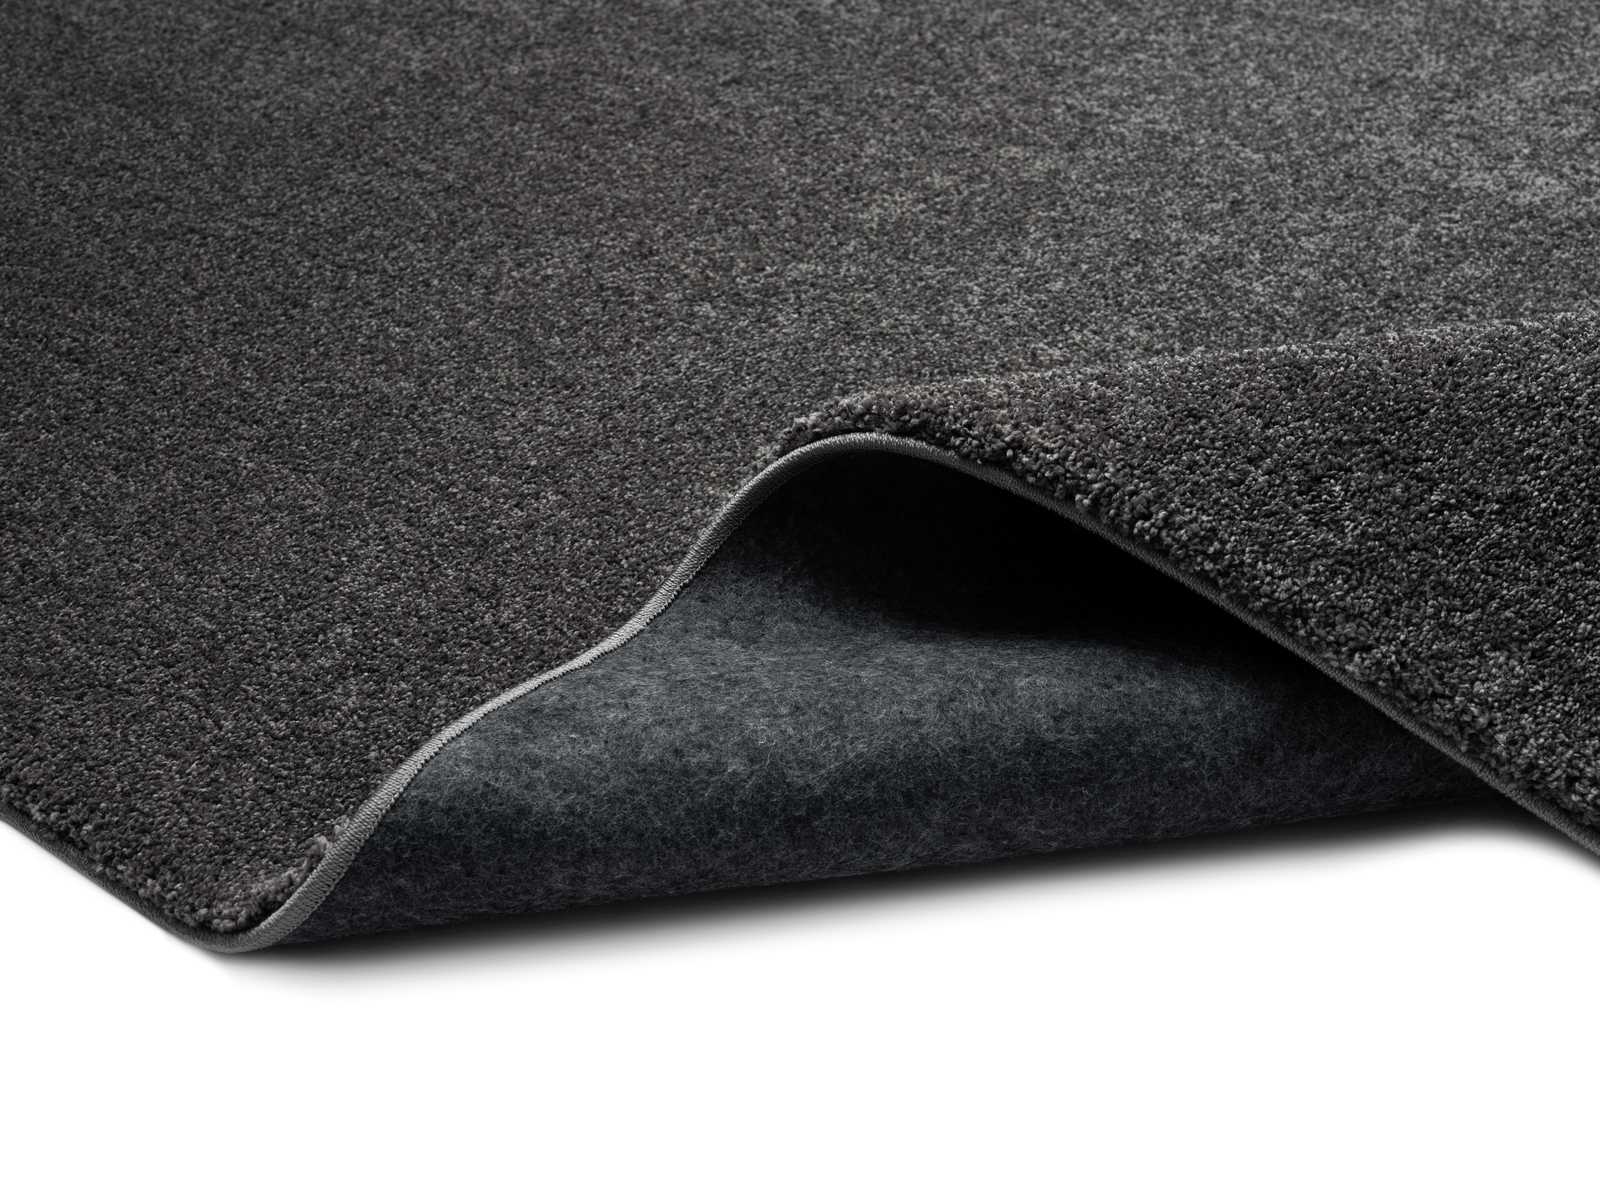             Soft short pile carpet in anthracite - 290 x 200 cm
        